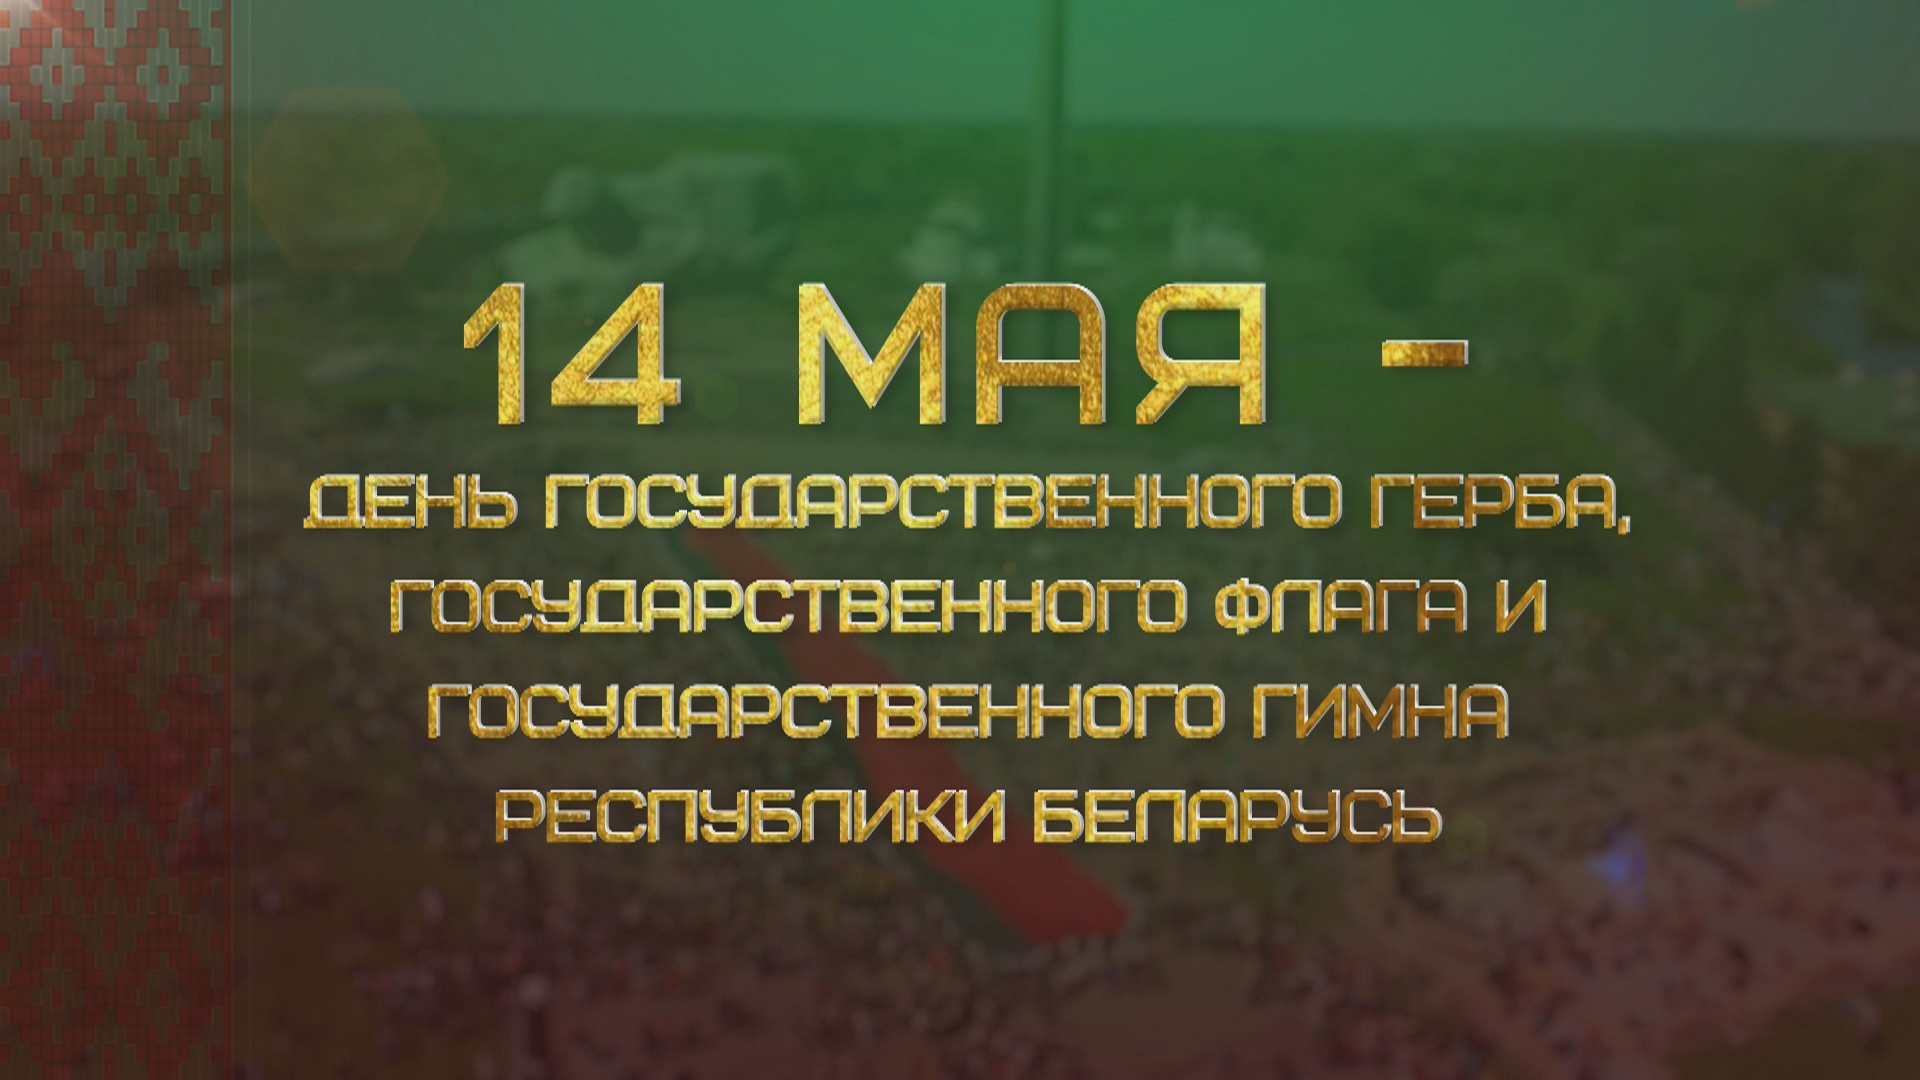 14 мая - День Государственного герба, Государственного флага и Государственного гимна Республики Беларусь